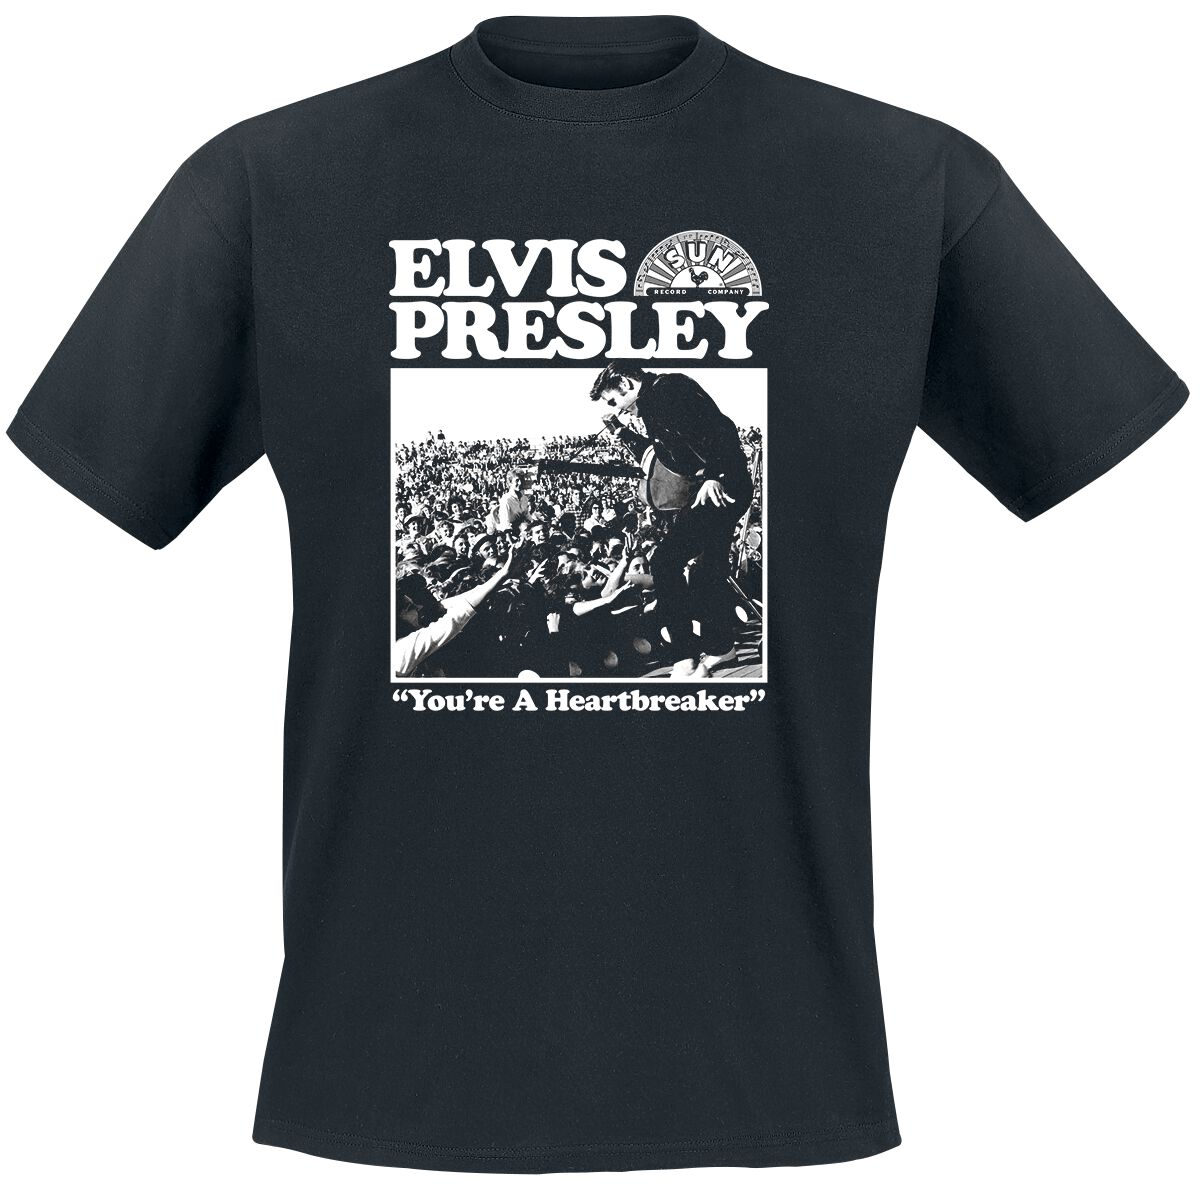 Presley, Elvis A Heartbreaker T-Shirt black